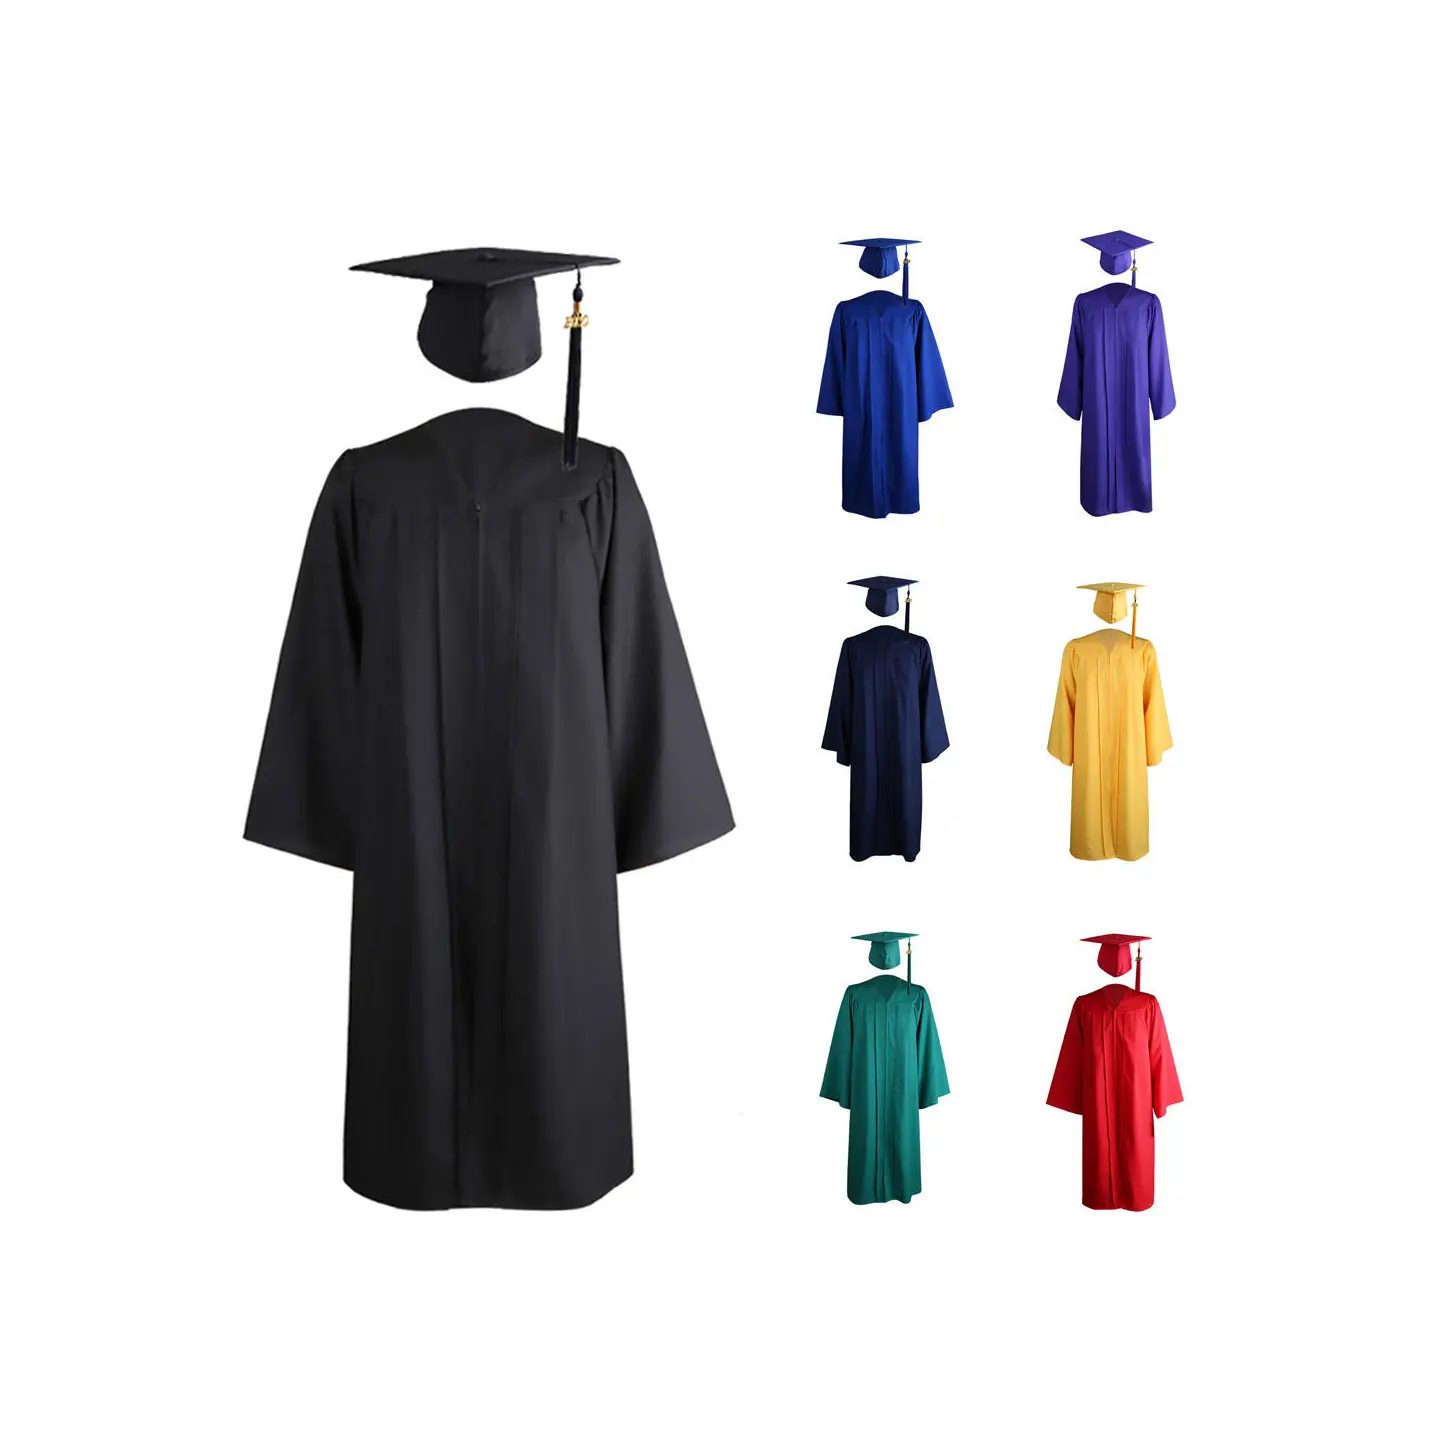 Toptan altın mezuniyet elbisesi siyah yetişkin üniversite töreni klasik mezuniyet kap ve elbisesi okul üniforması mezuniyet elbiseleri